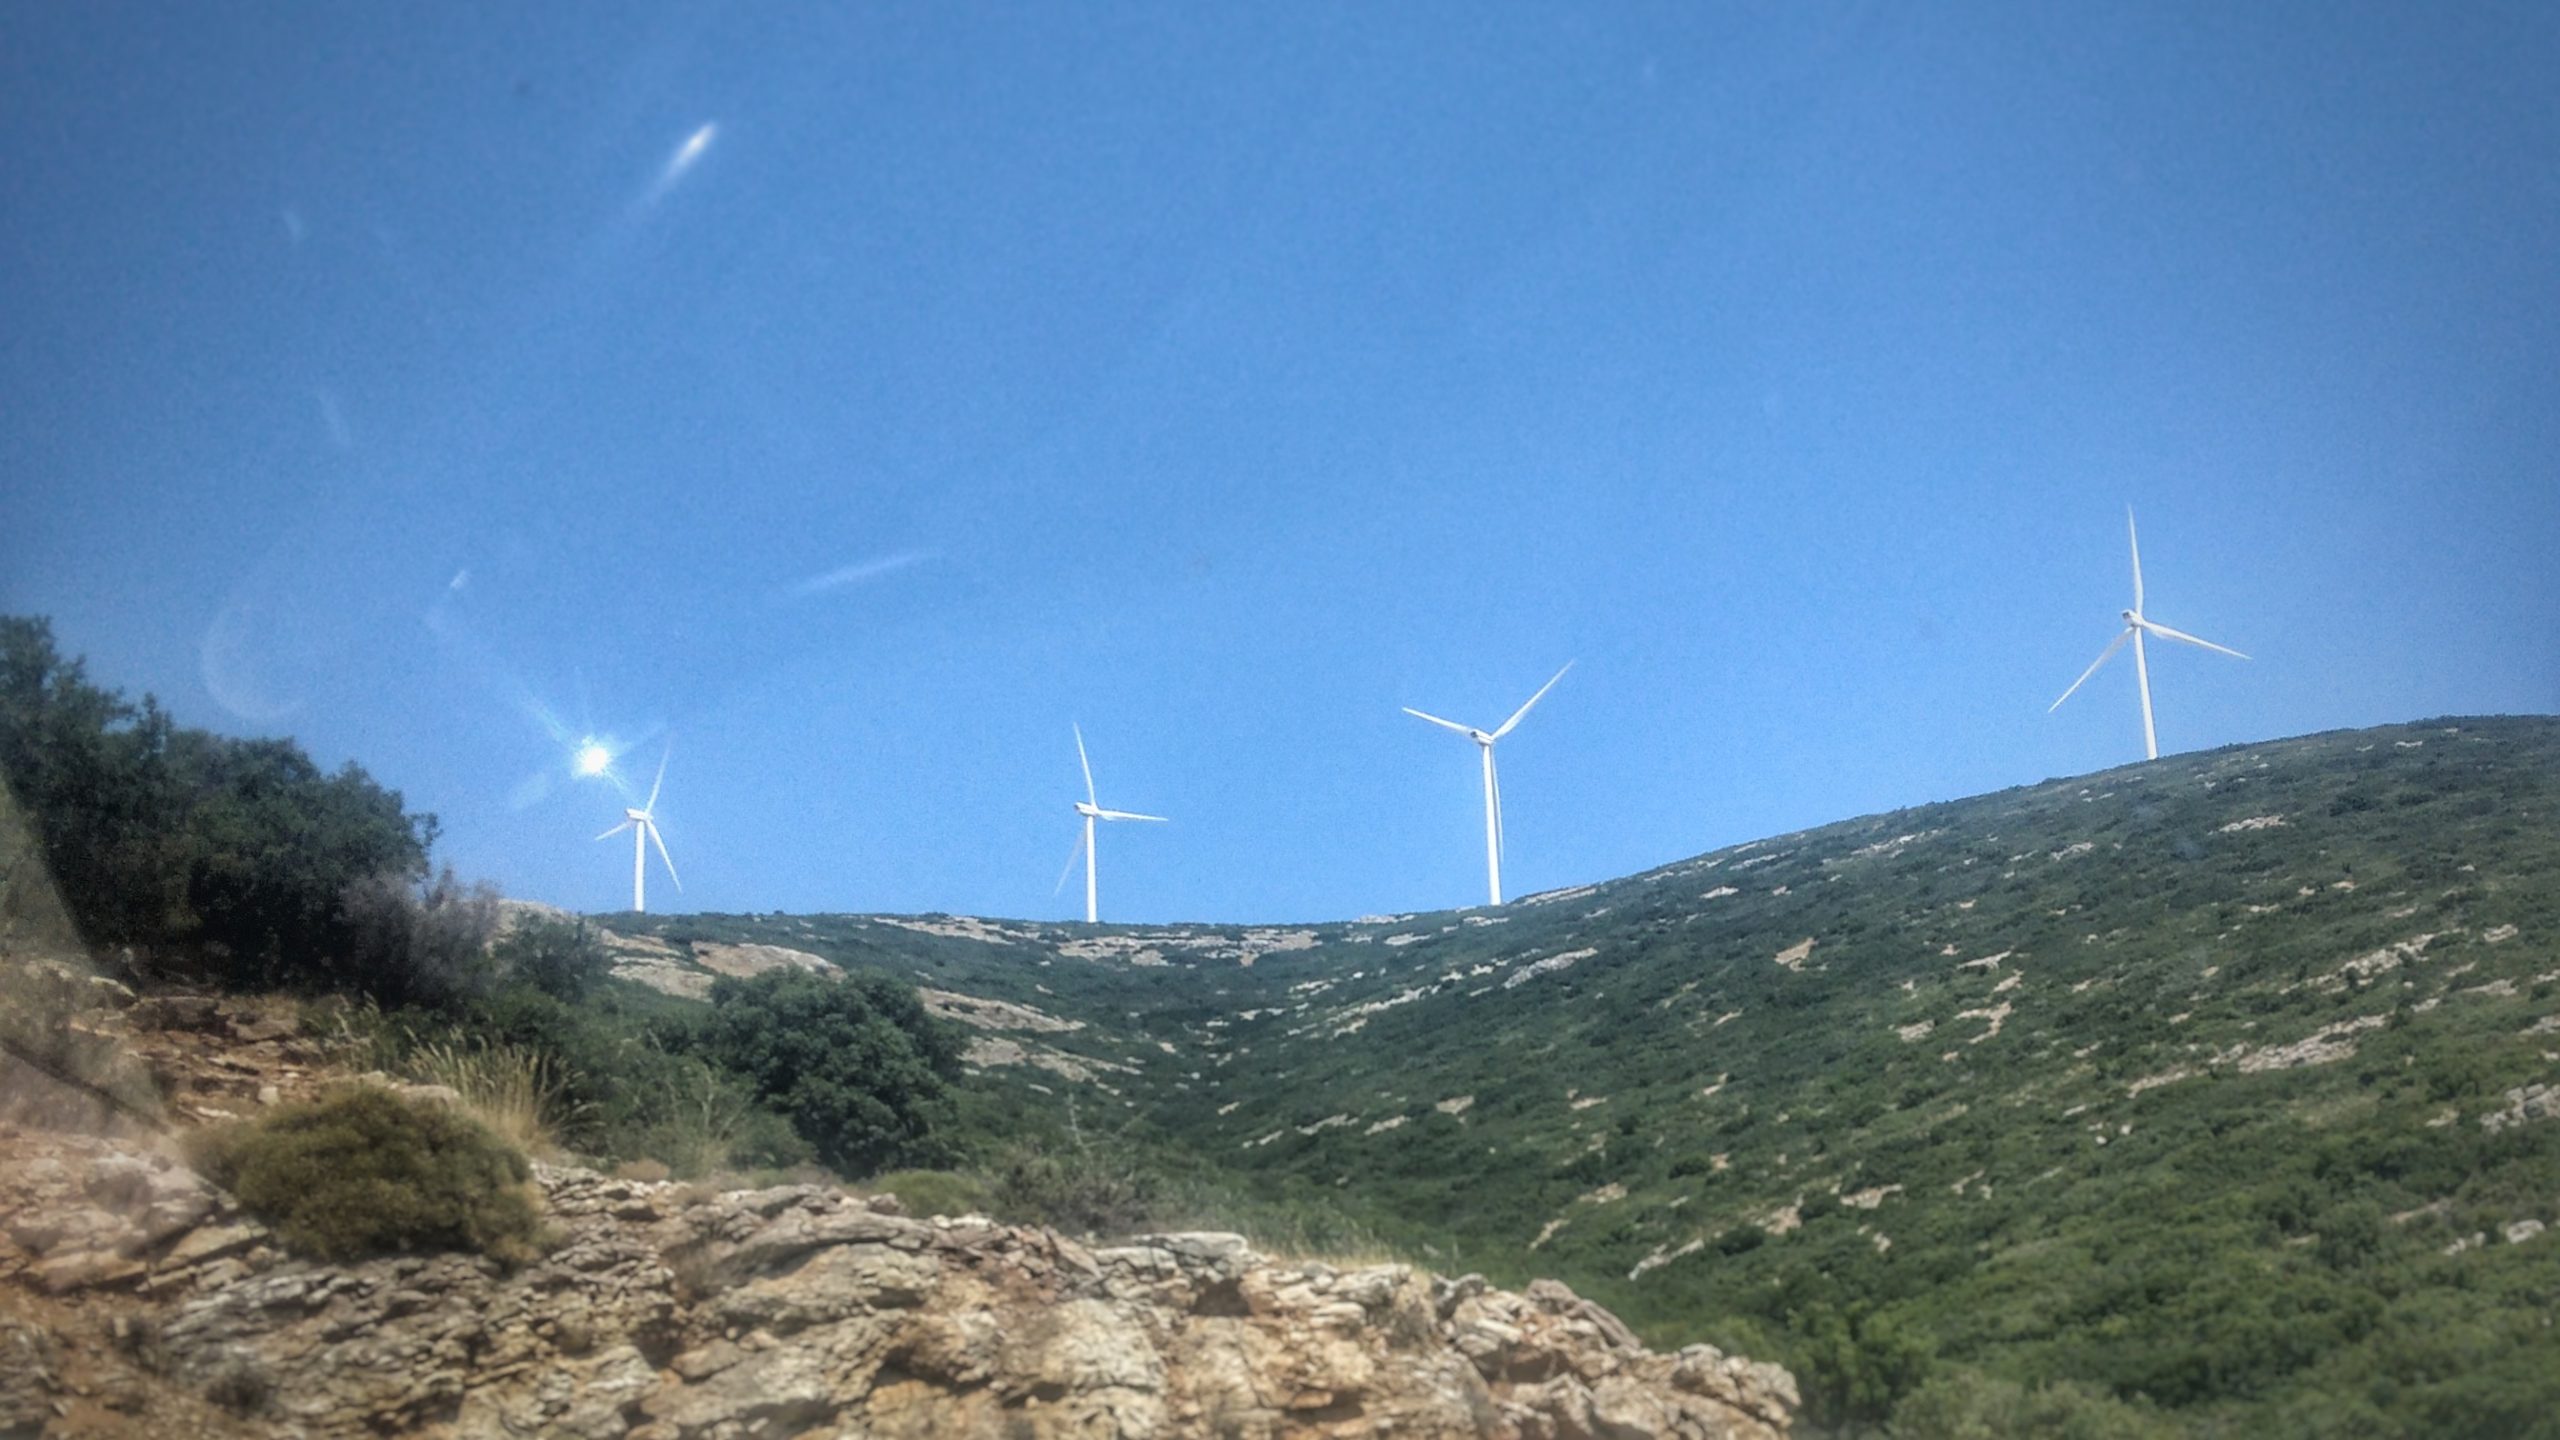 Πώς εξελίχθηκε η εκμετάλλευση των Ανανεώσιμων Πηγών Ενέργειας στην Ελλάδα